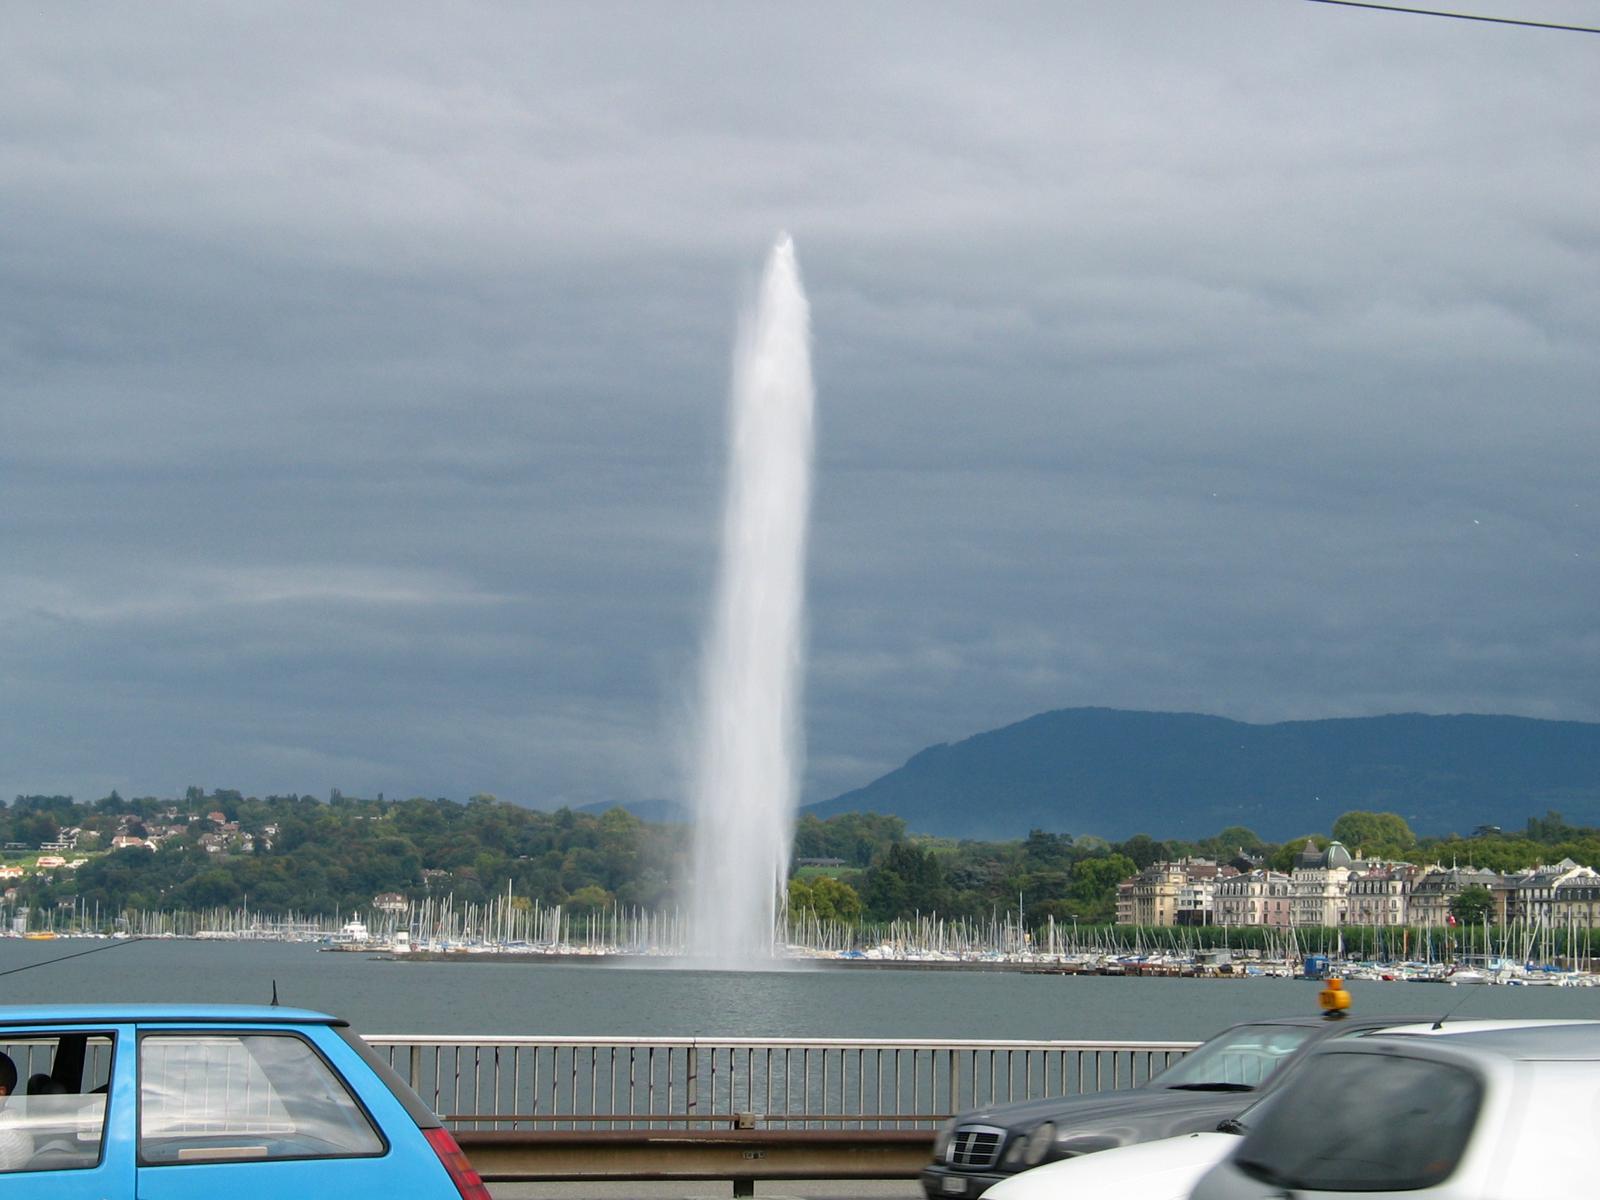 A big fountain